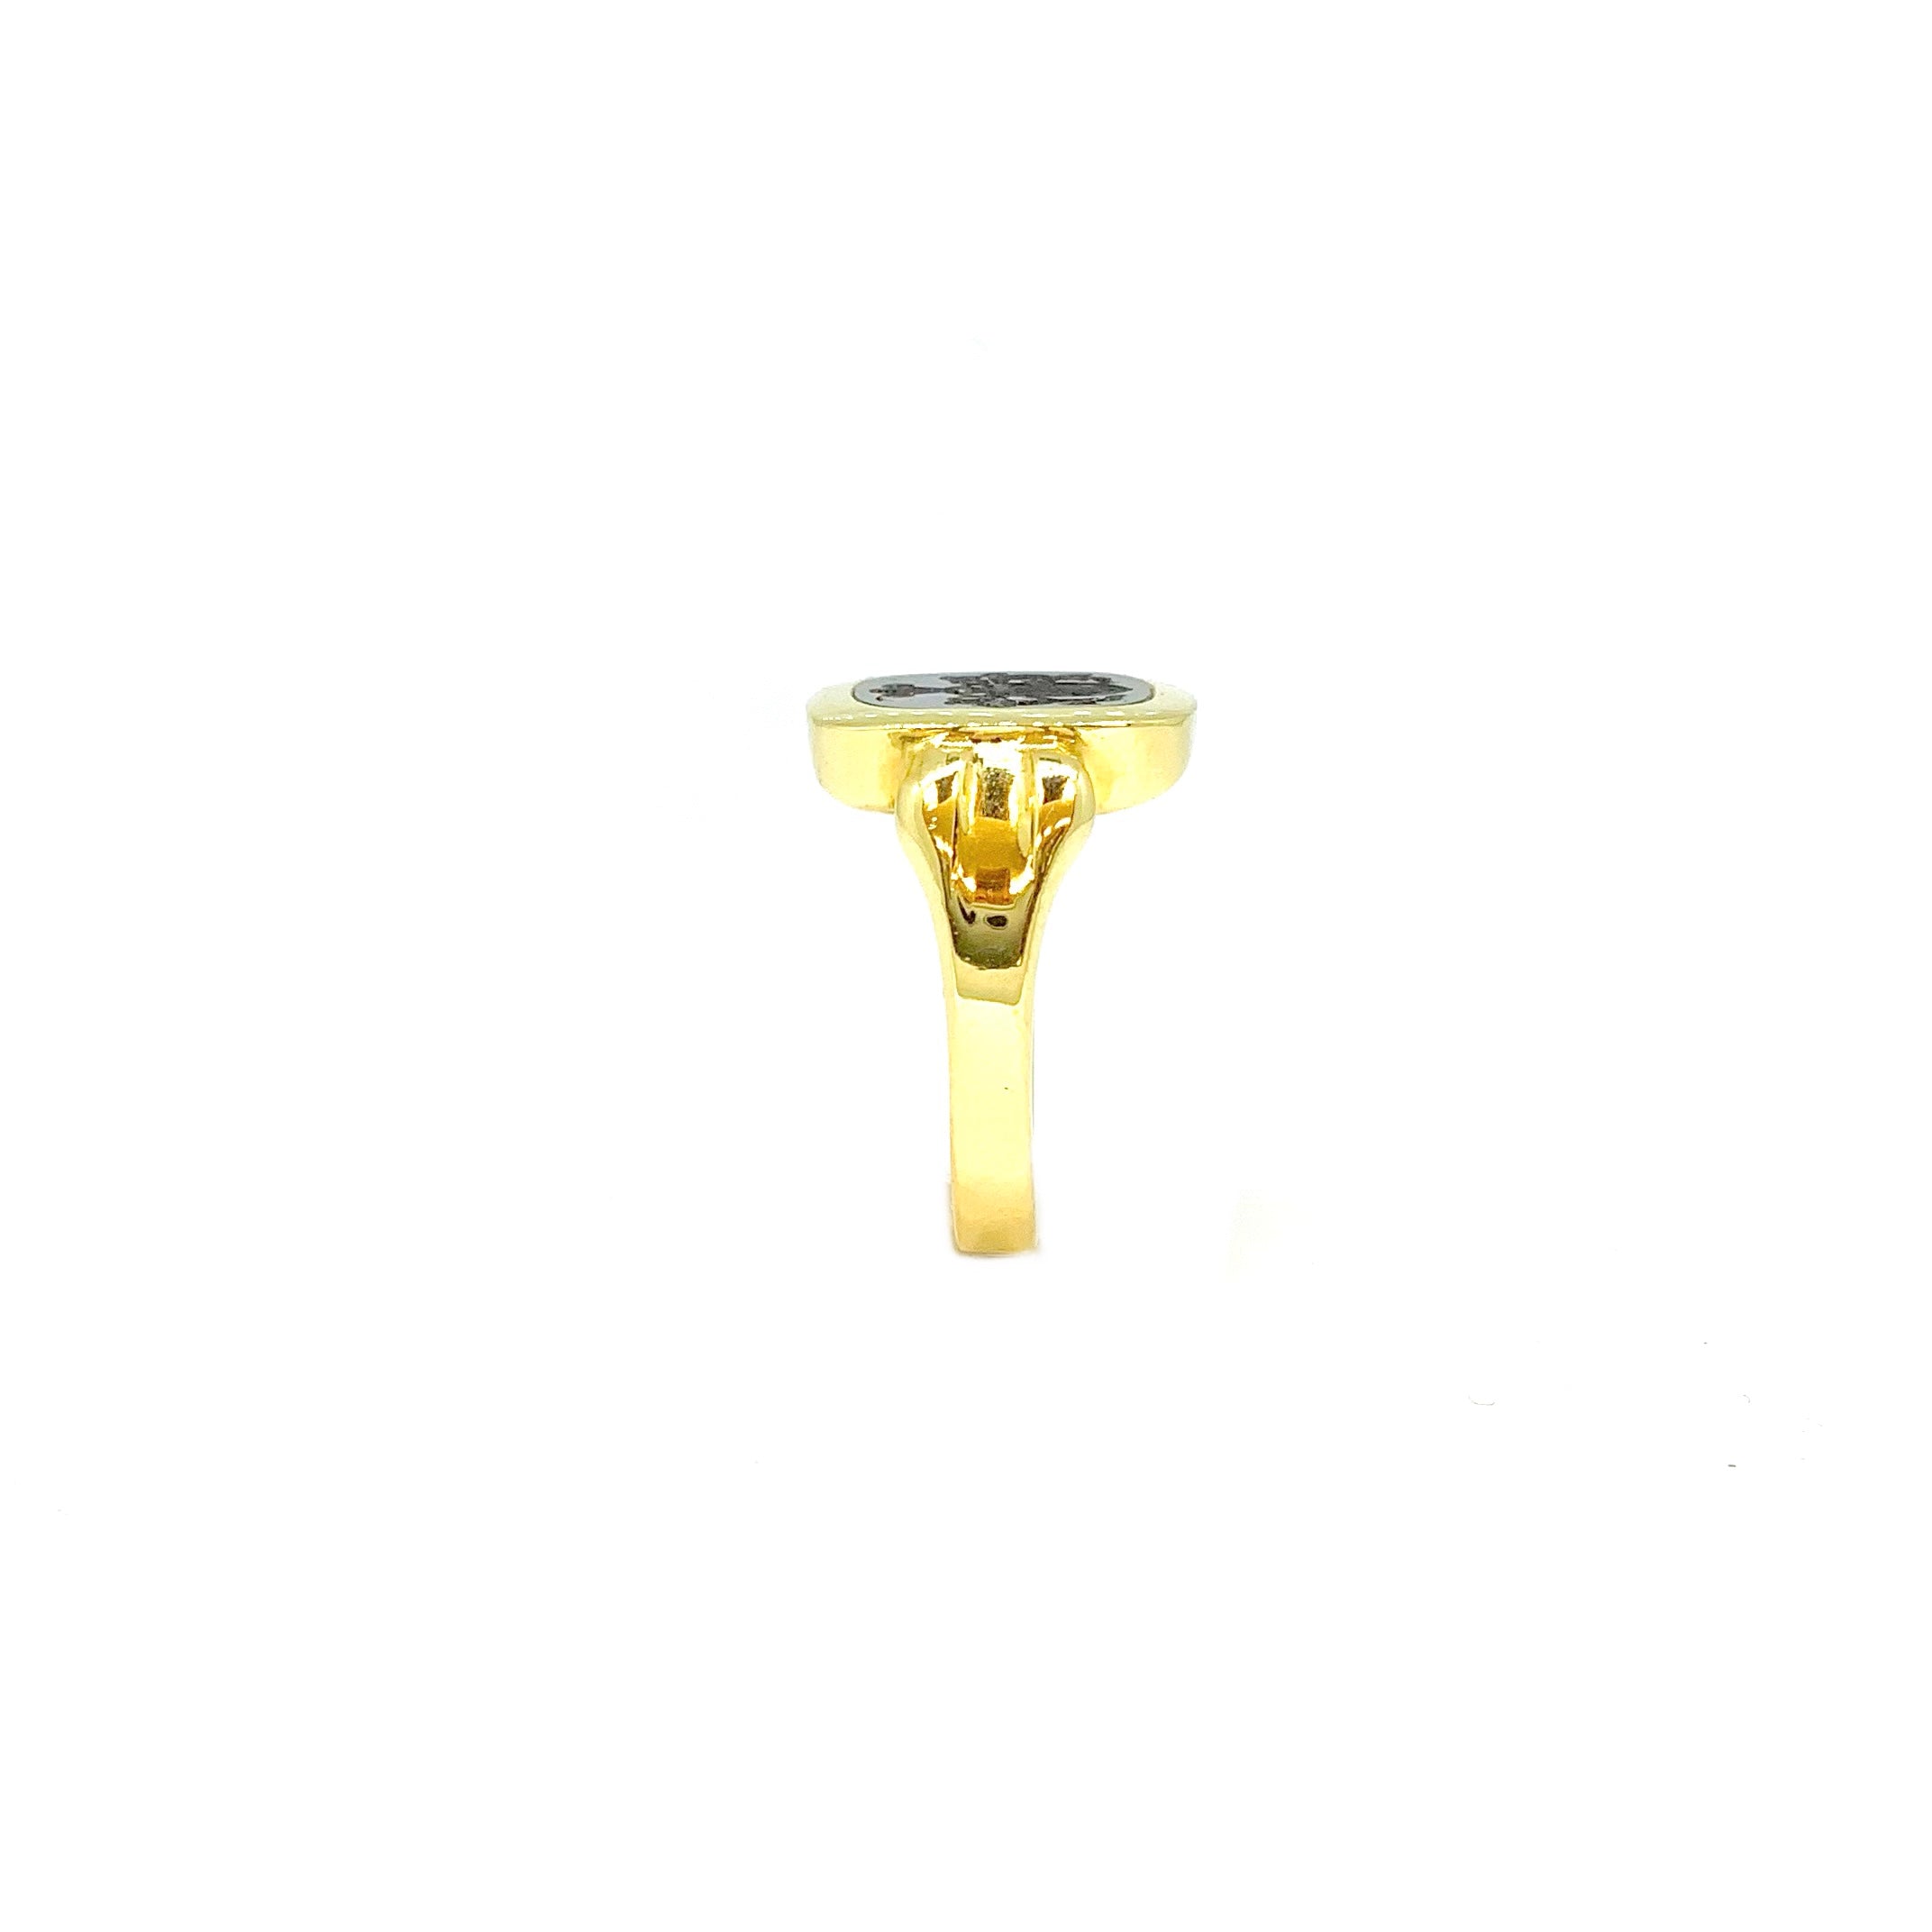 yellow gold signet ring price